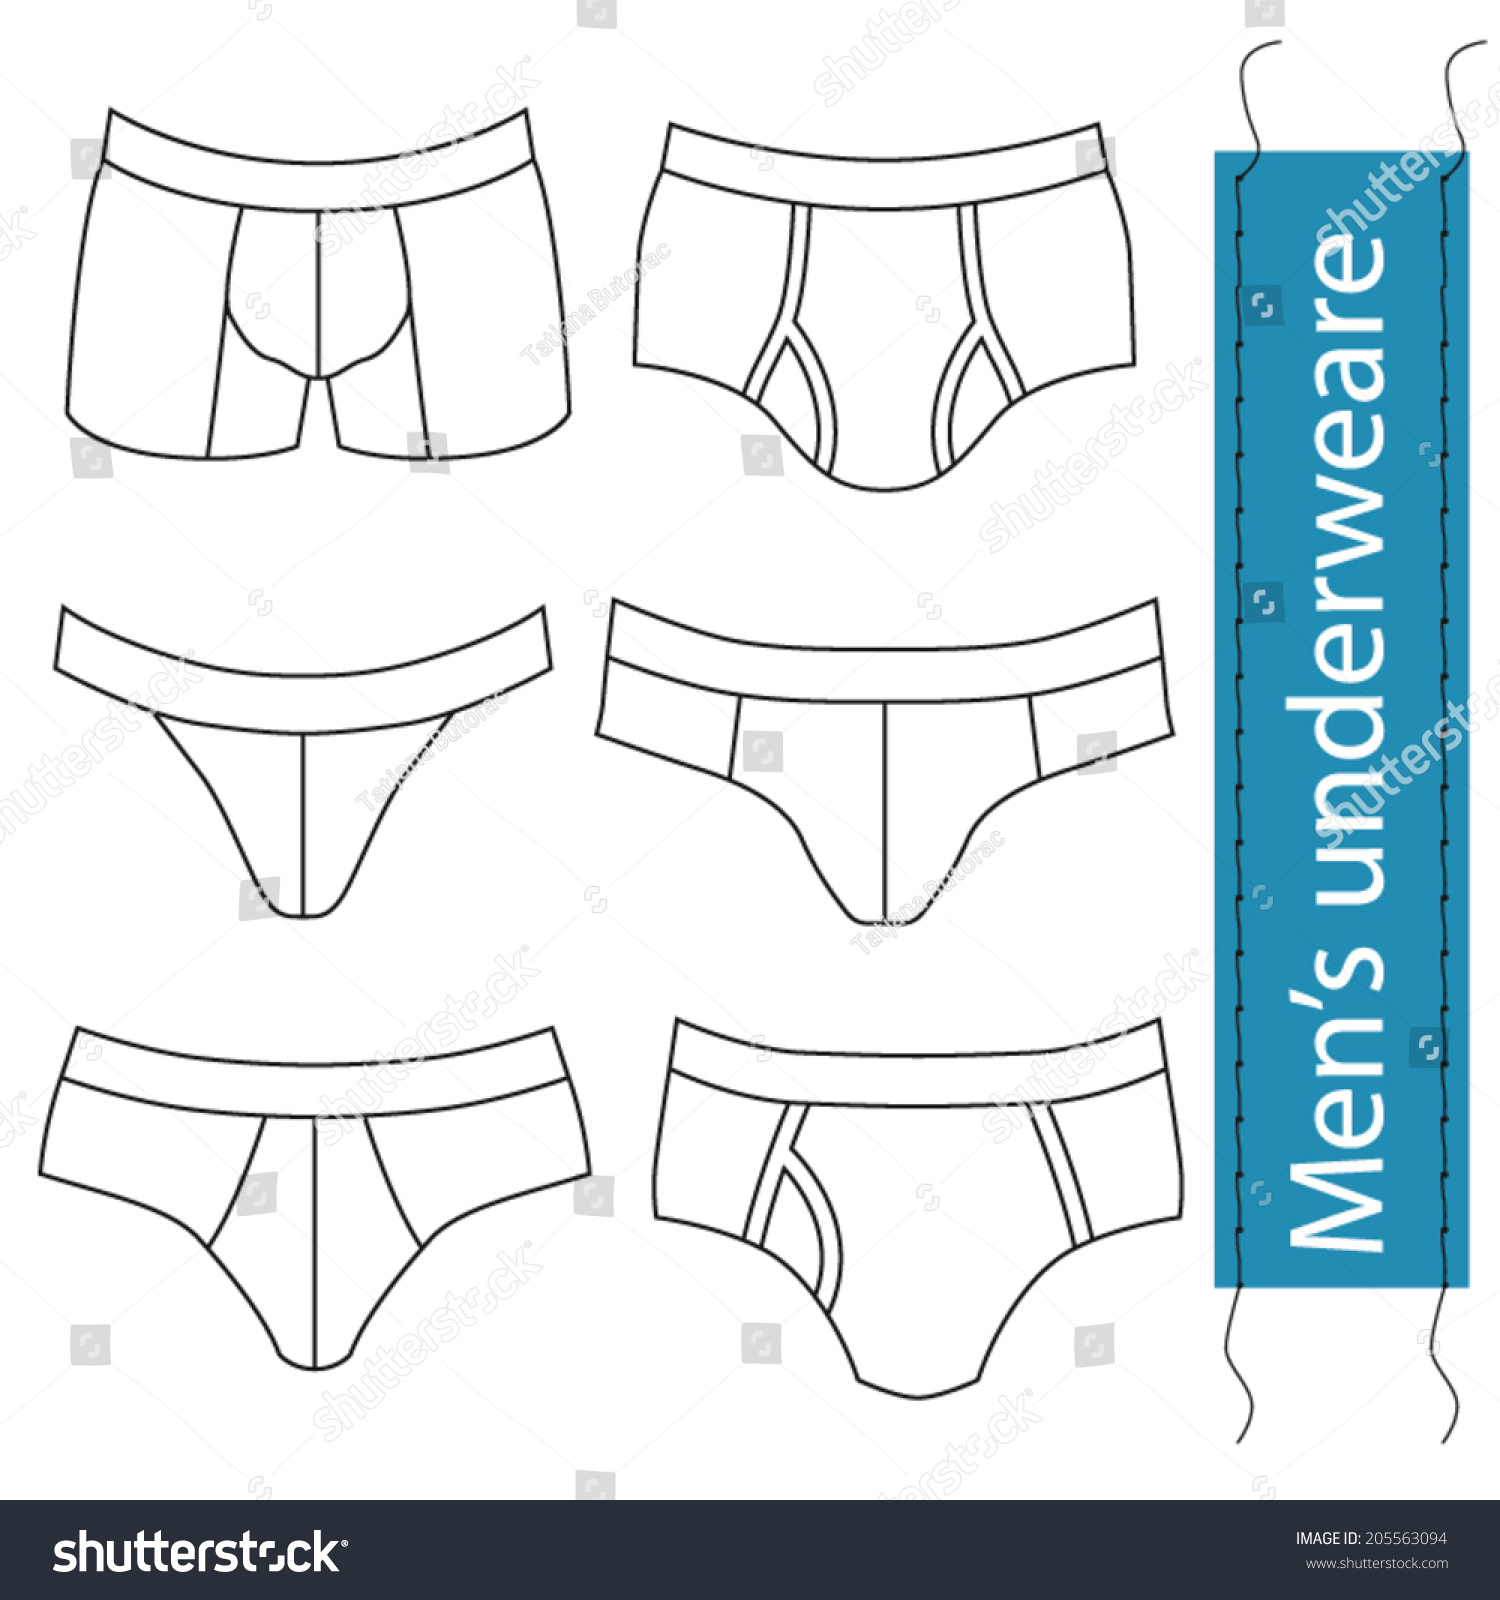 mens underwear clipart free - photo #11